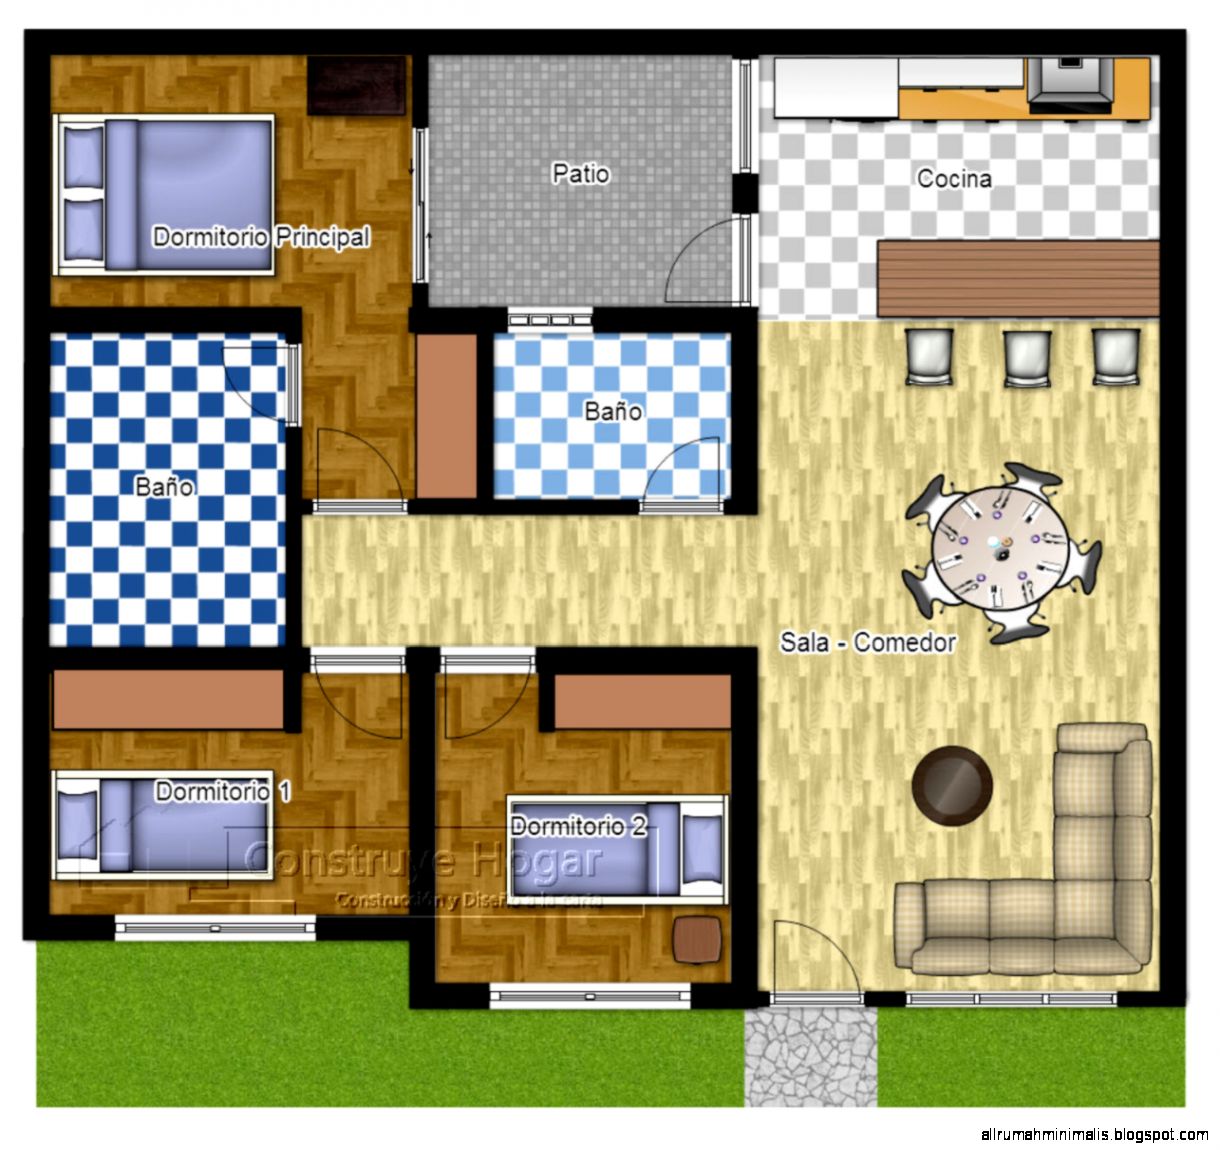  Gambar  Rumah  Minimalis  3  Kamar 